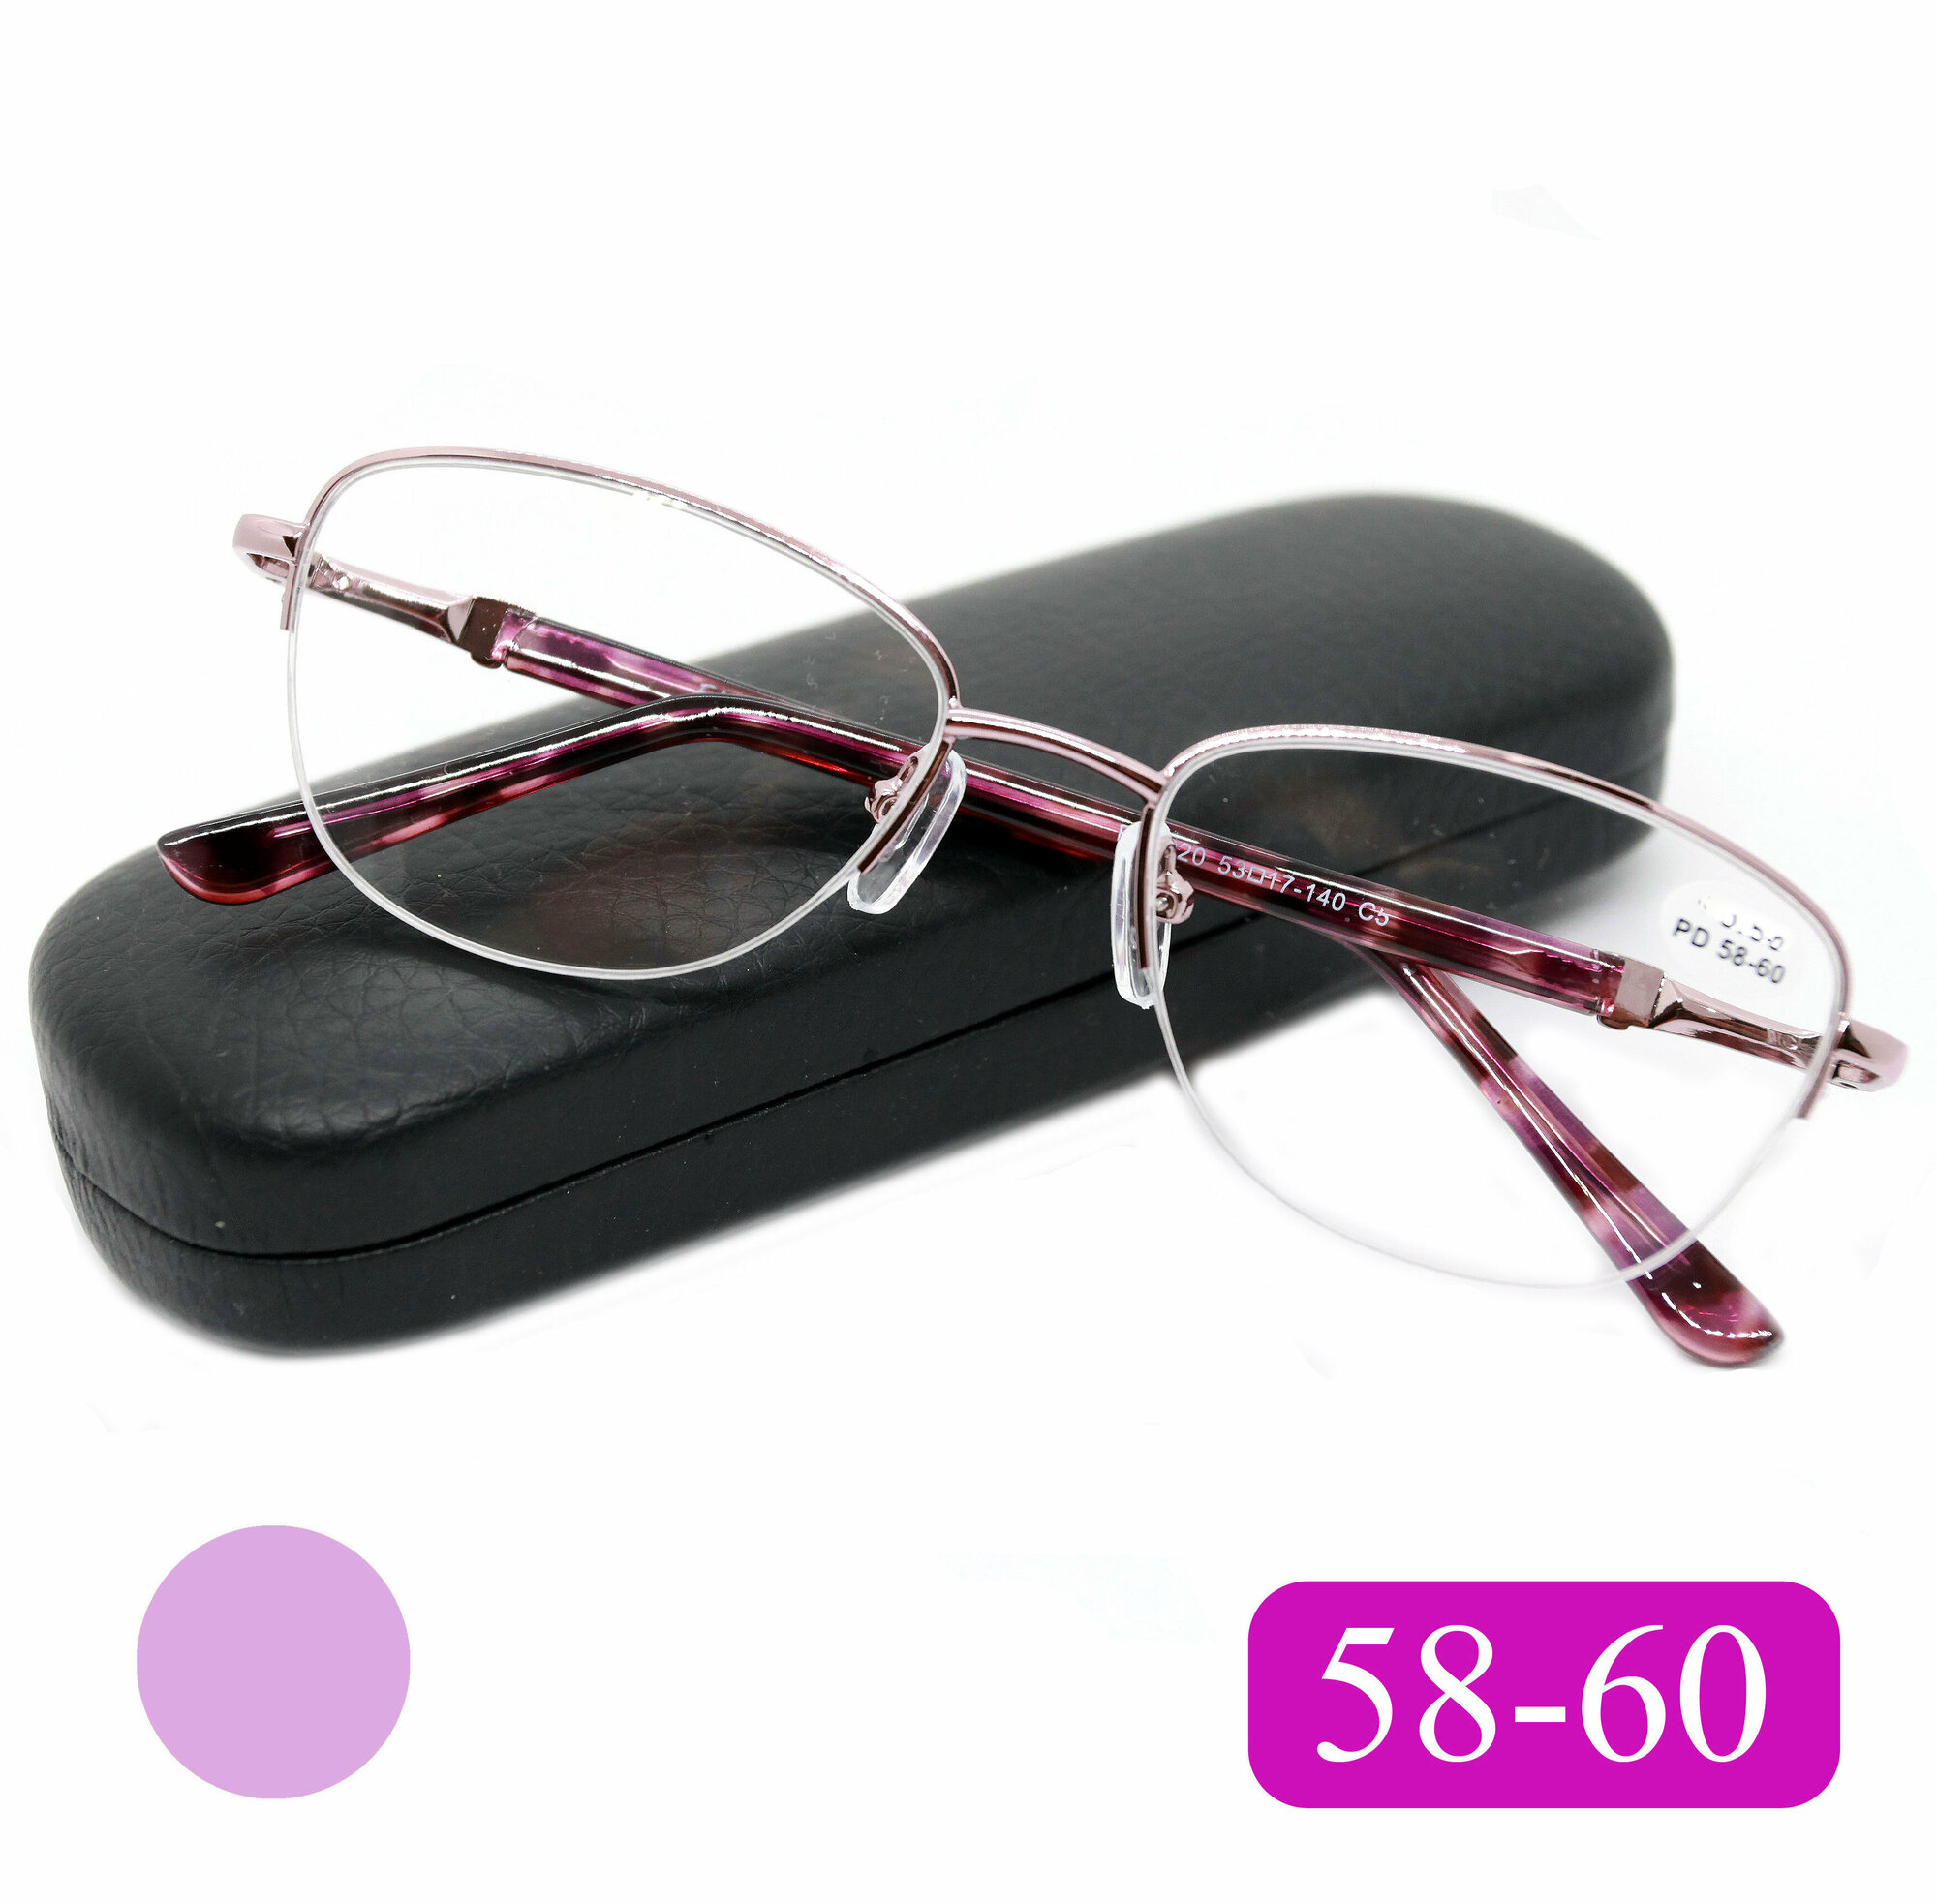 Готовые очки 58-60 с диоптриями (+0.75) FABIA MONTI 8920 C5 цвет фиолетовый с футляром РЦ 58-60